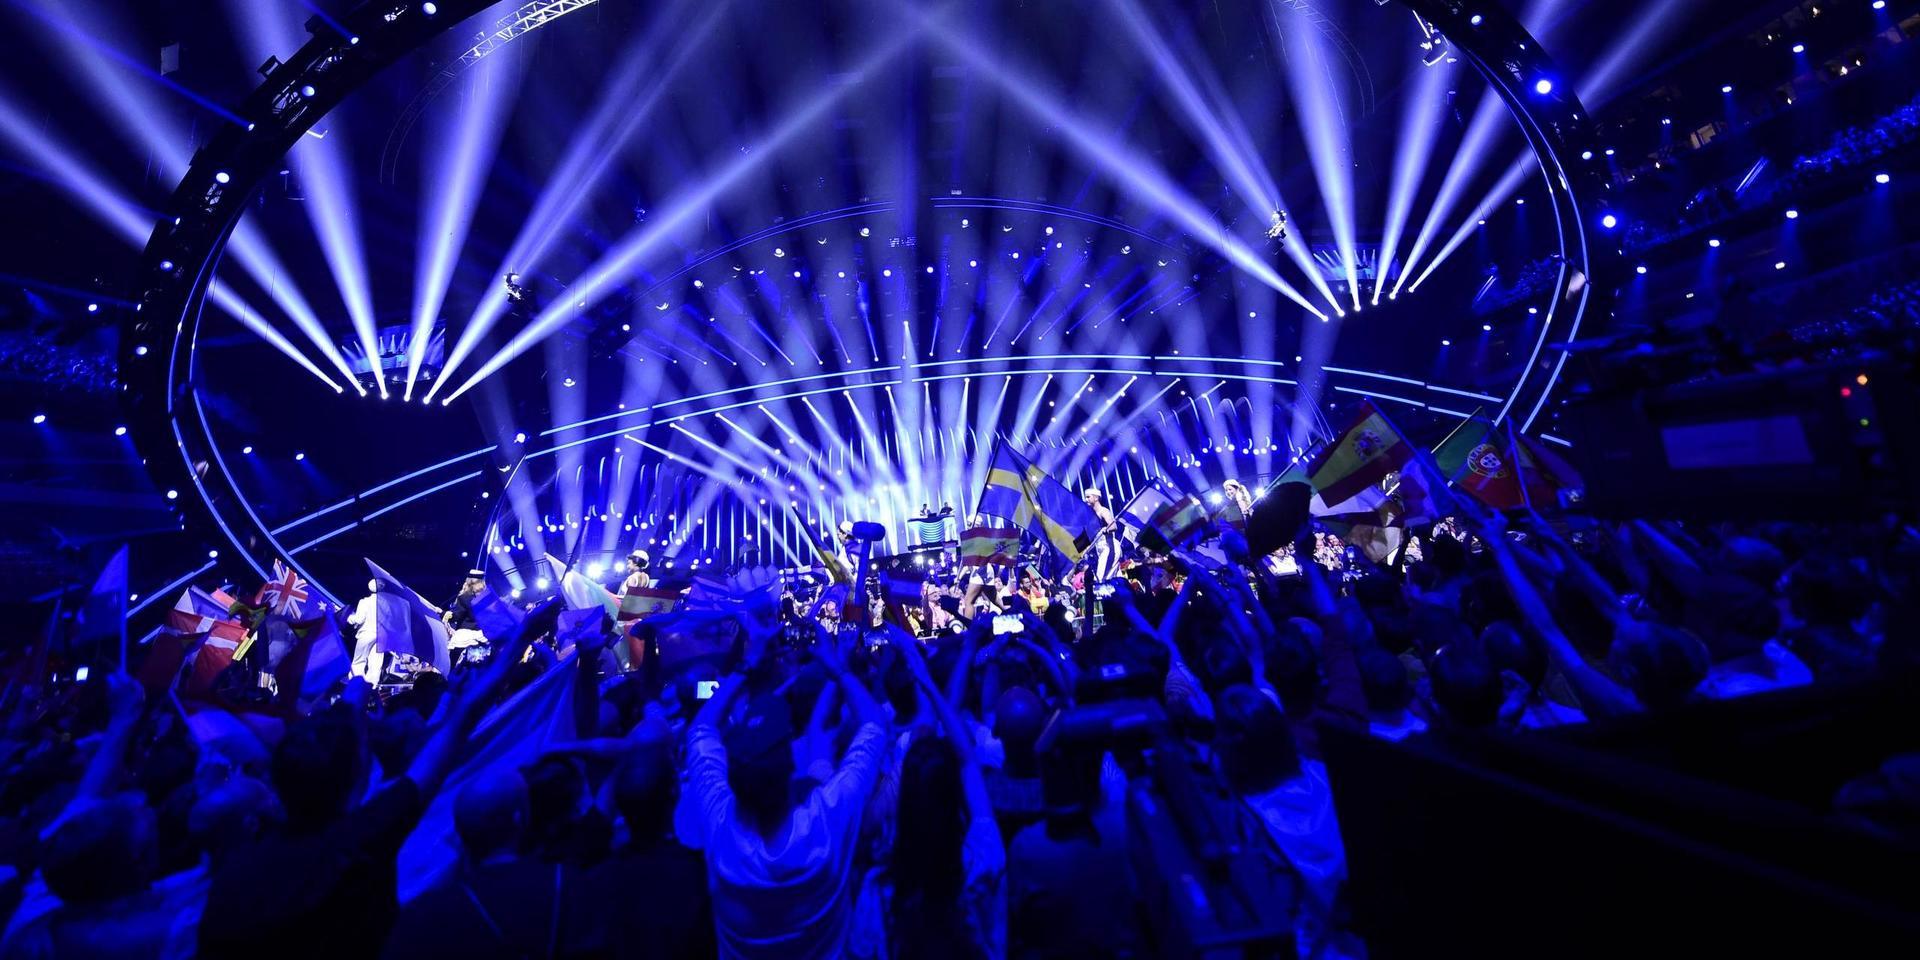 Eurovision i Lissabon 2018. Det året var Belarus med i tävlingen, men de kommer inte få komma med sitt bidrag till Rotterdam.